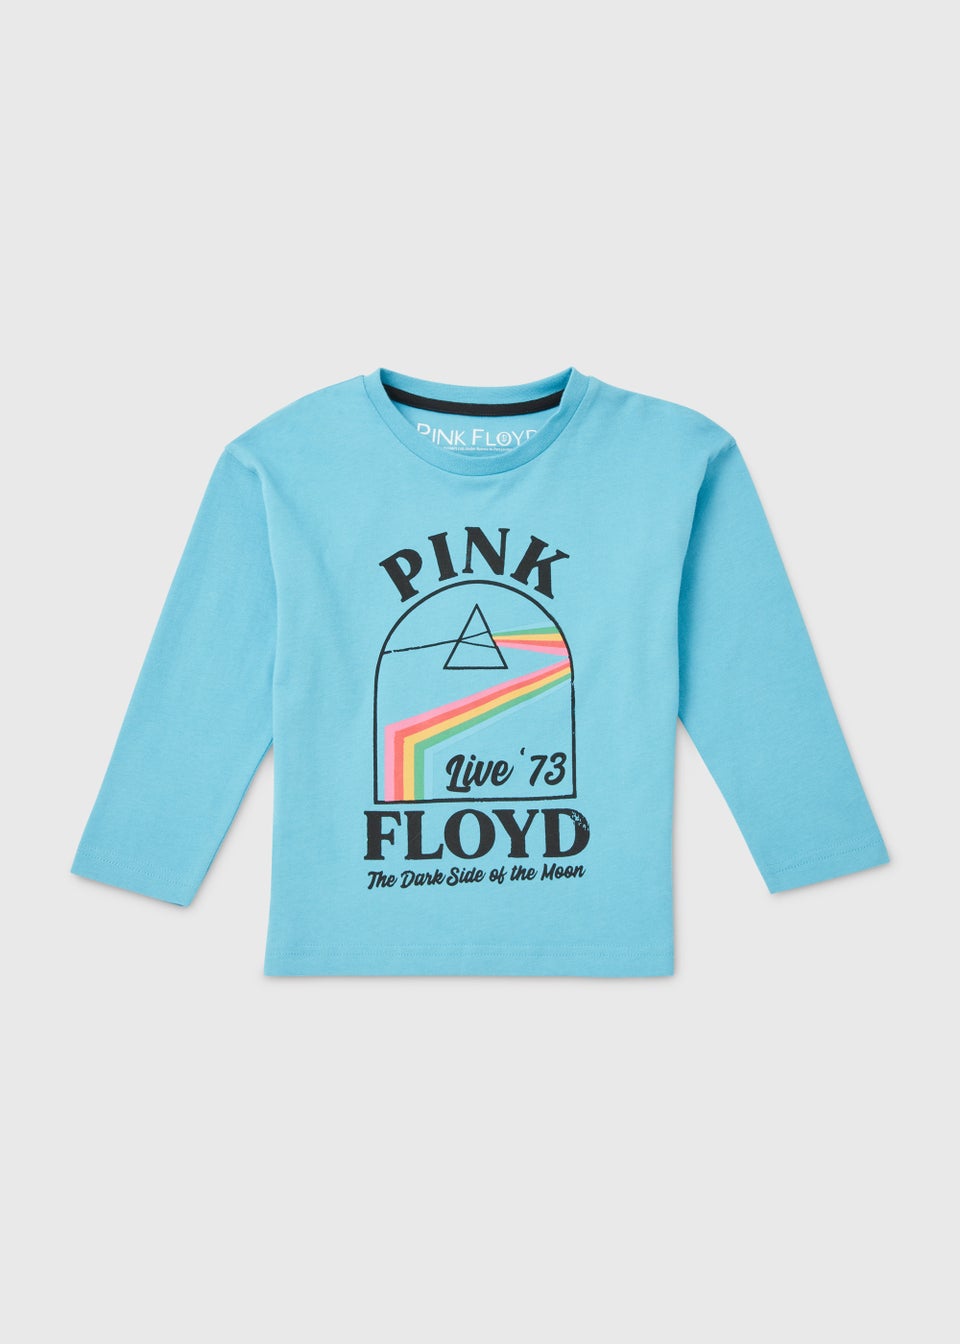 Детская синяя футболка Pink Floyd (9 мес.–6 лет), голубой pink floyd dark side of the moon lp спрей для очистки lp с микрофиброй 250мл набор